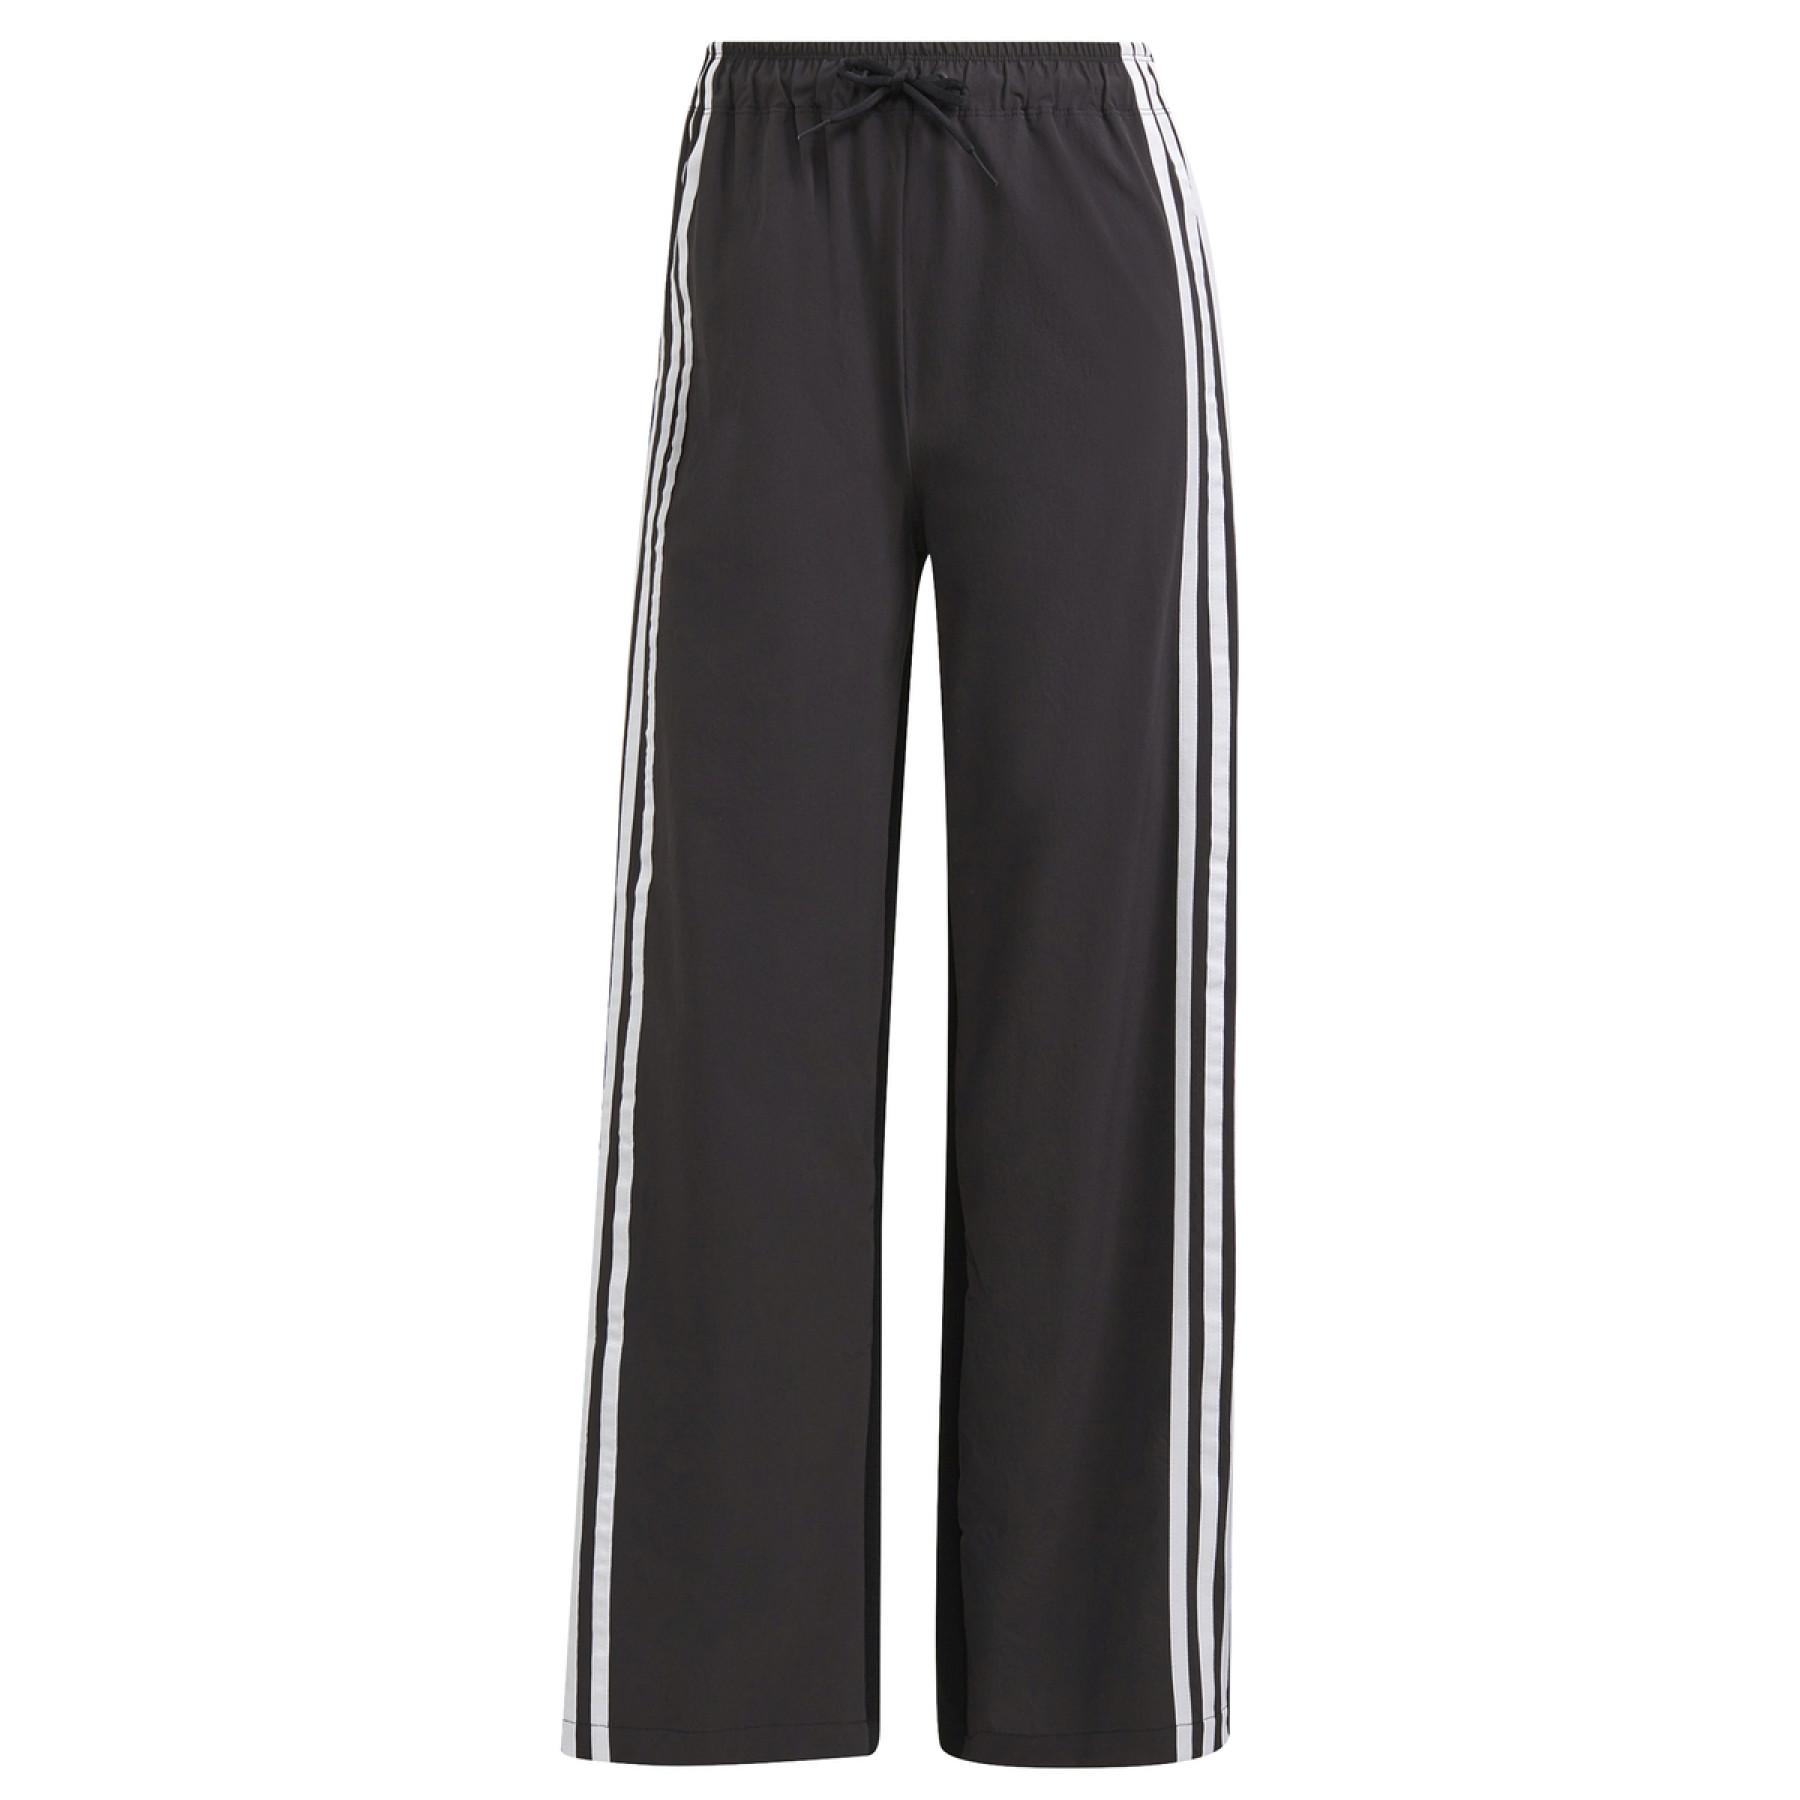 Women's trousers adidas Sportswear Aeroknit Snap